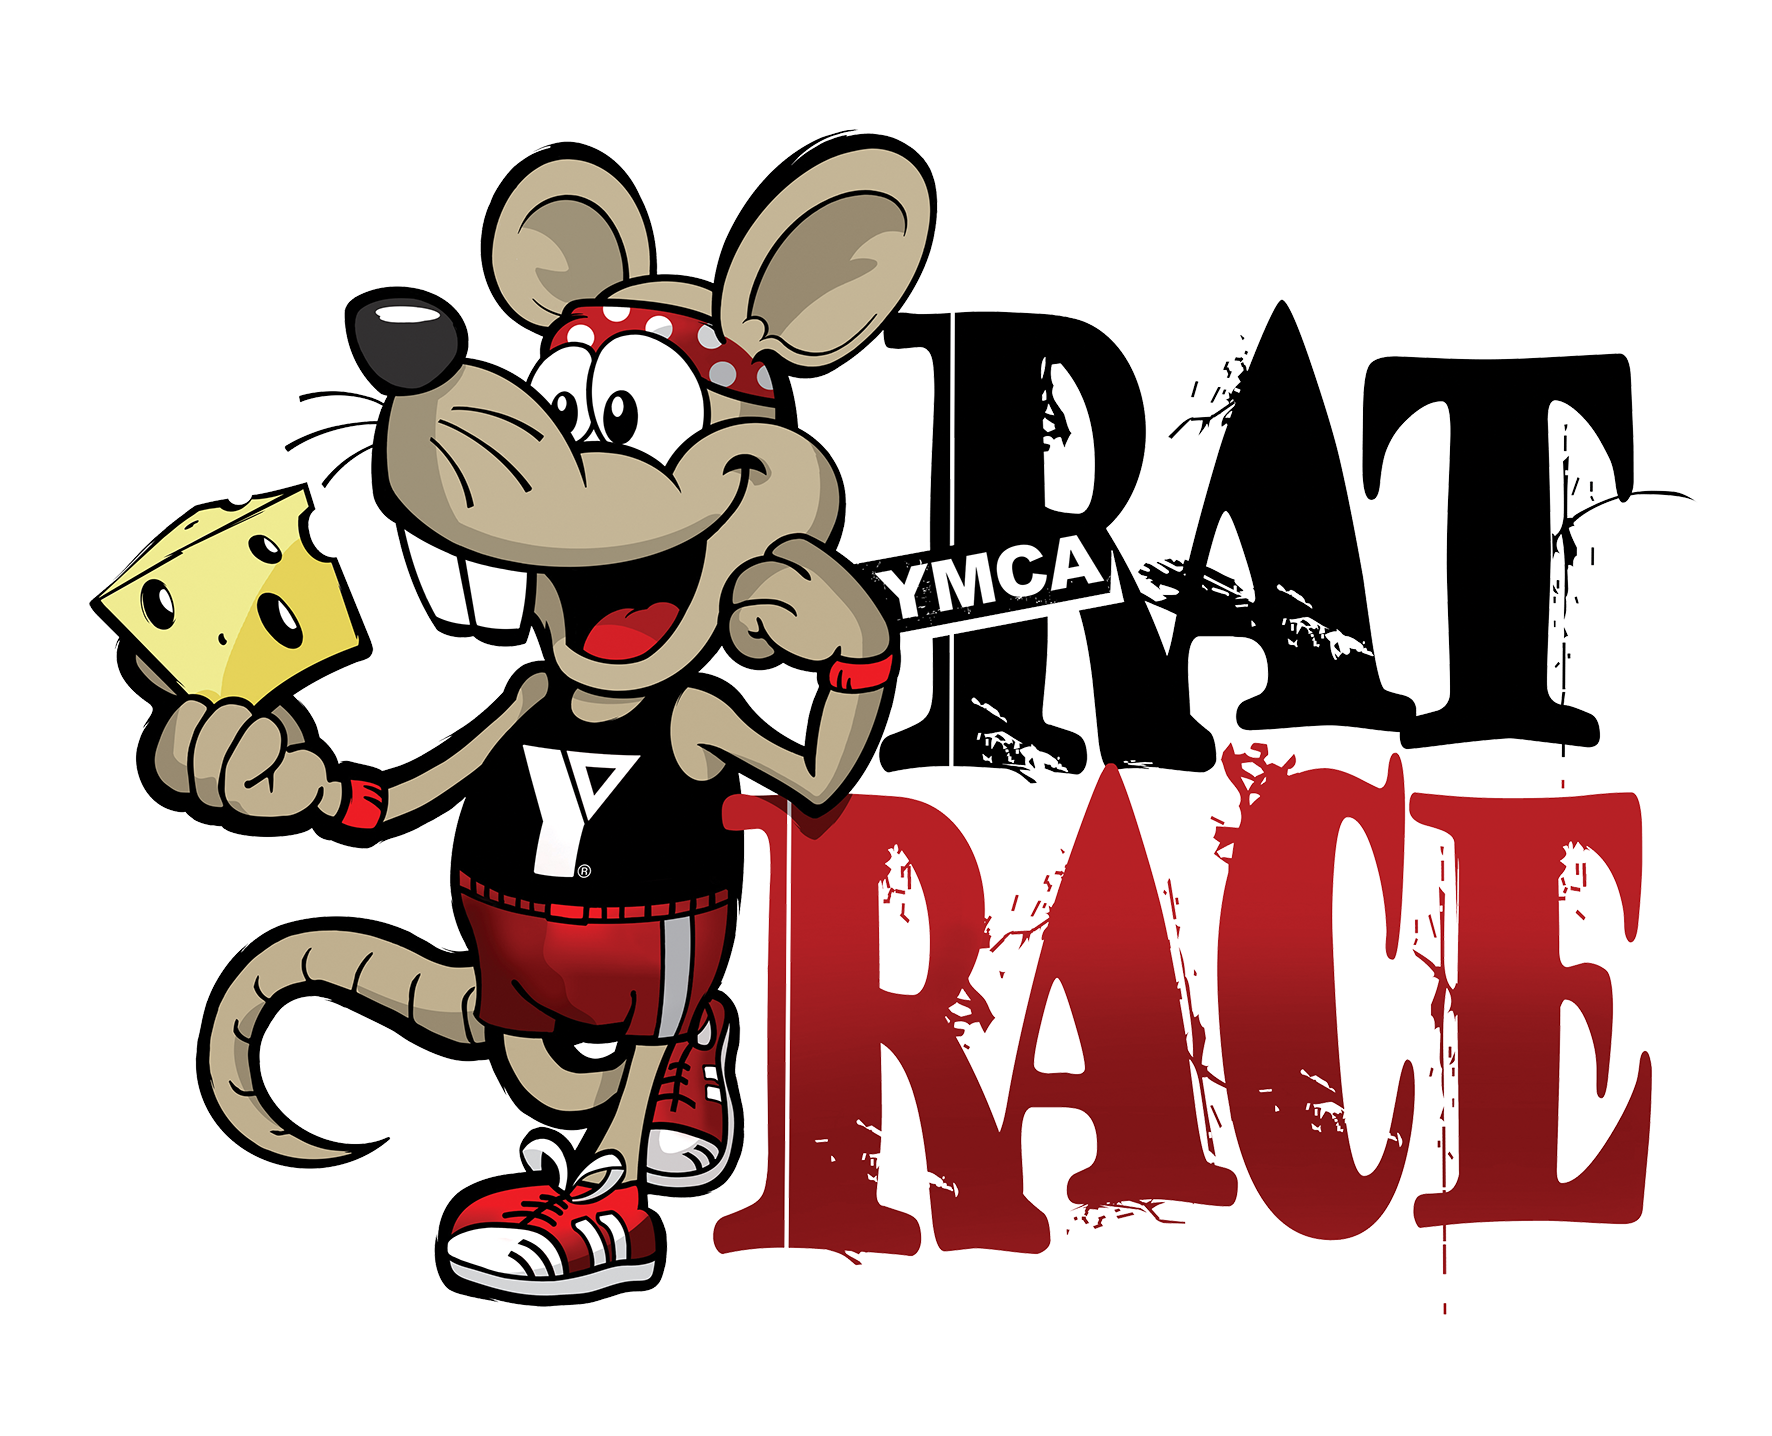 clipart rat rat race